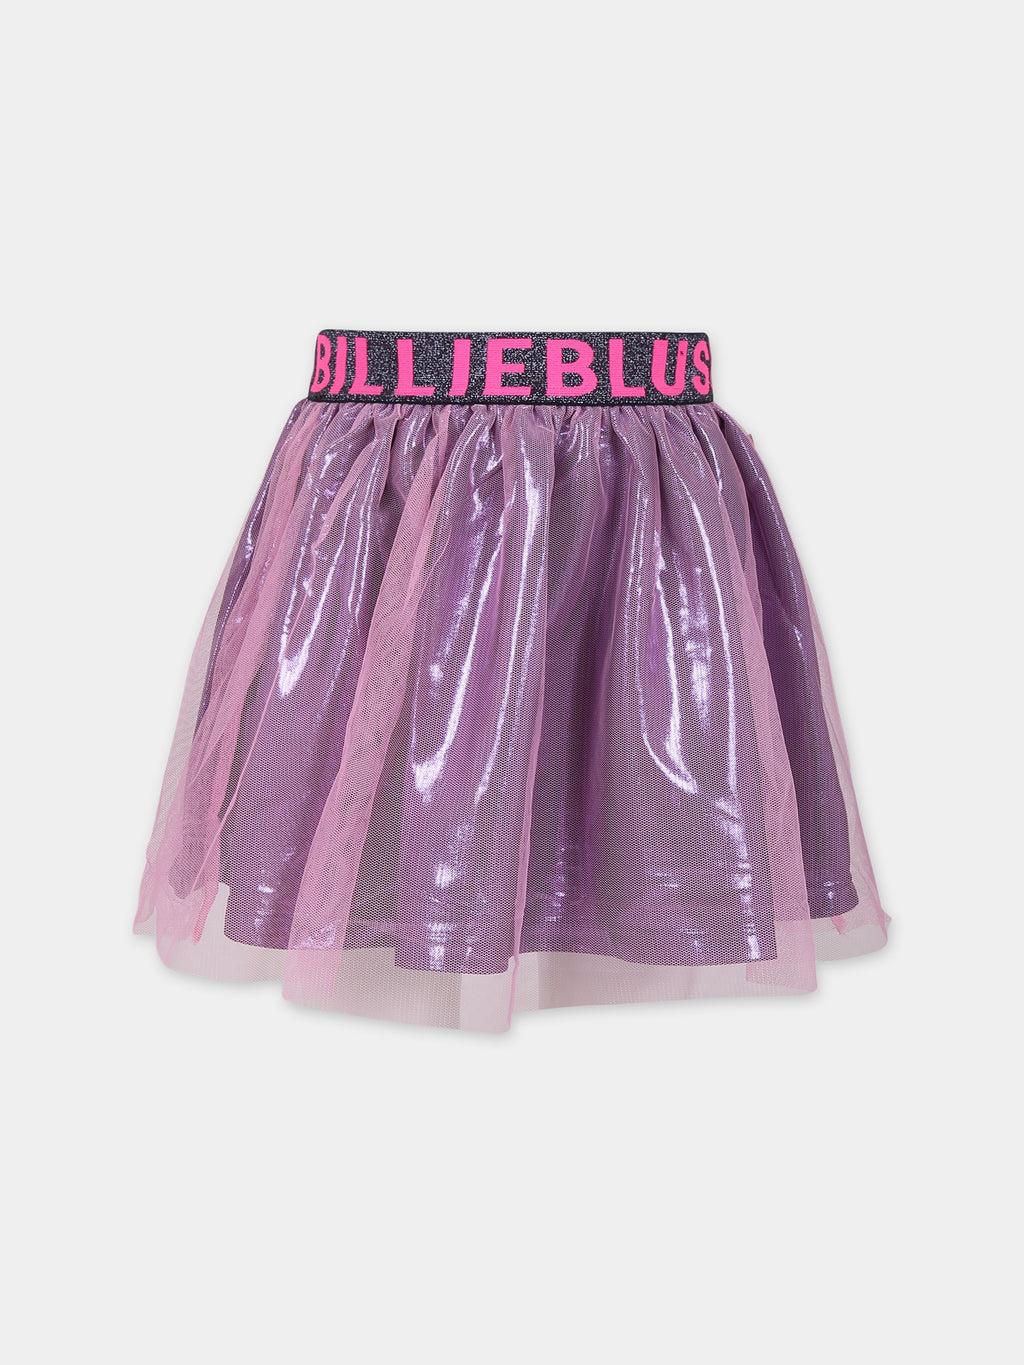 Pink elegant skirt for girl with logo